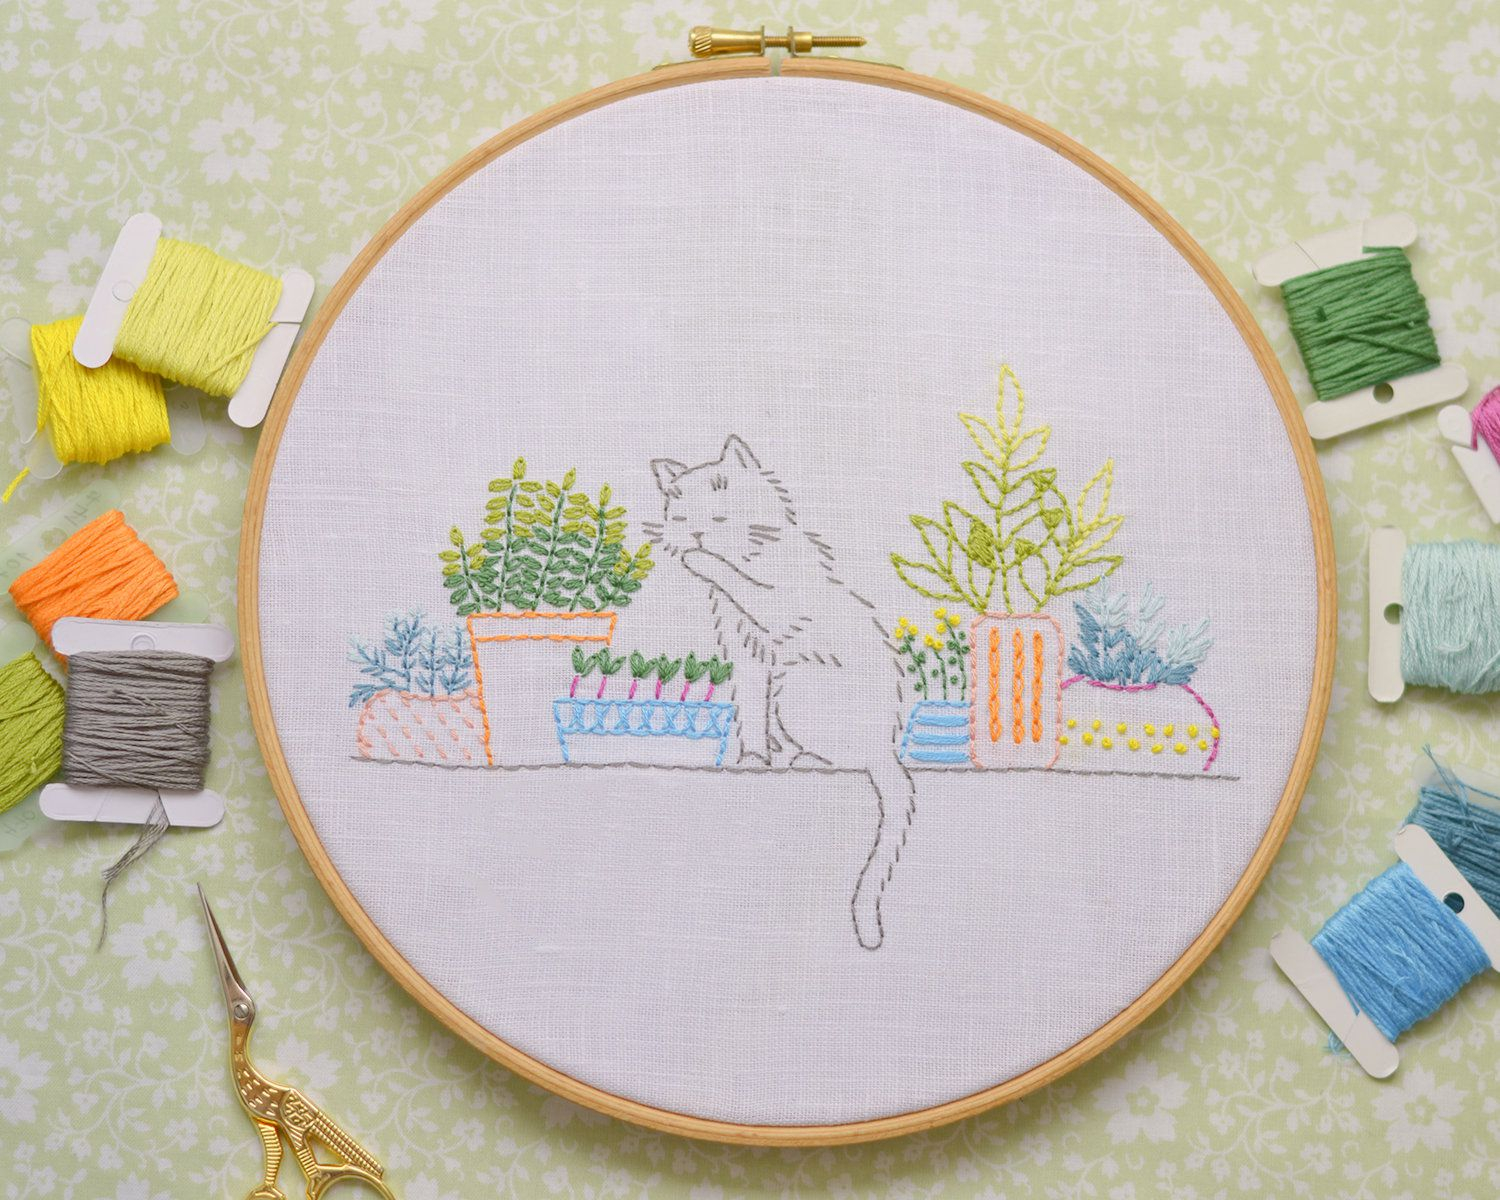 Cat Embroidery Patterns 15 Cat Embroidery Patterns